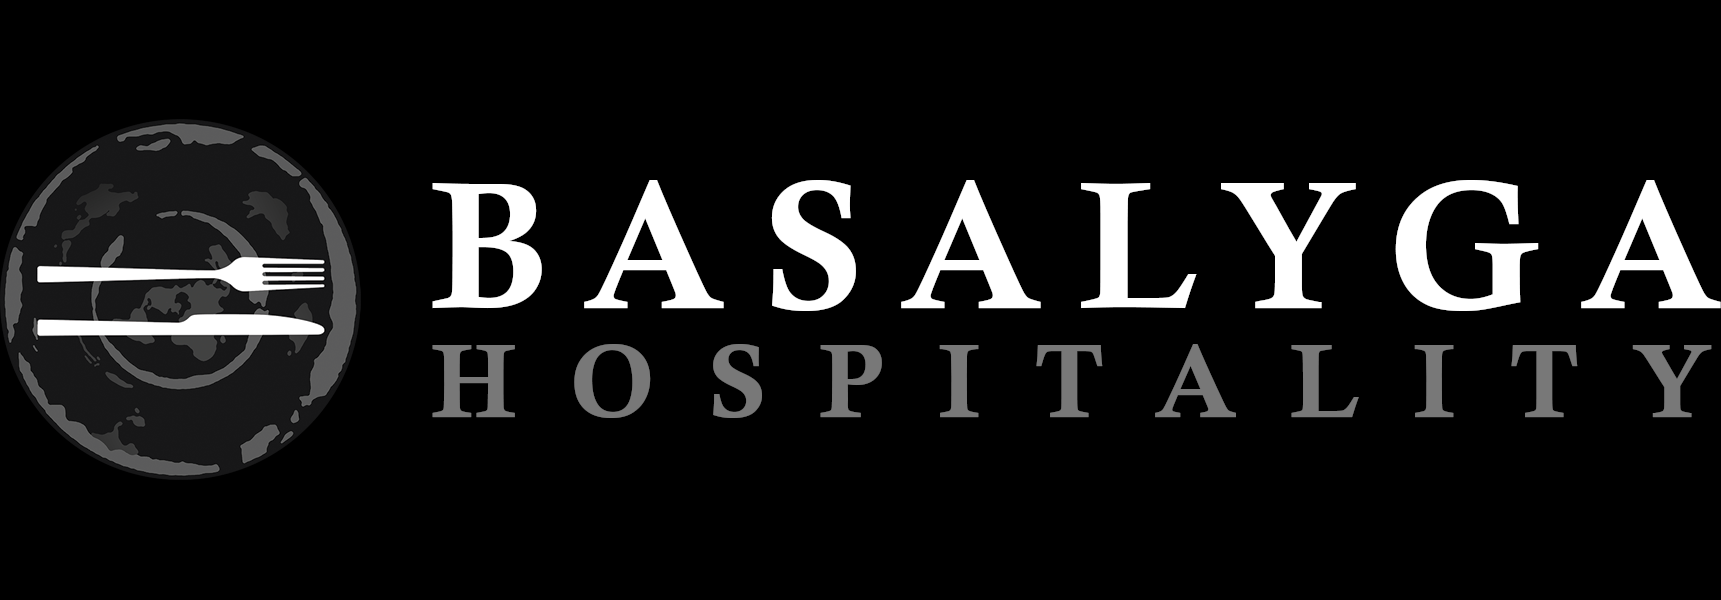 Basalyga Hospitality